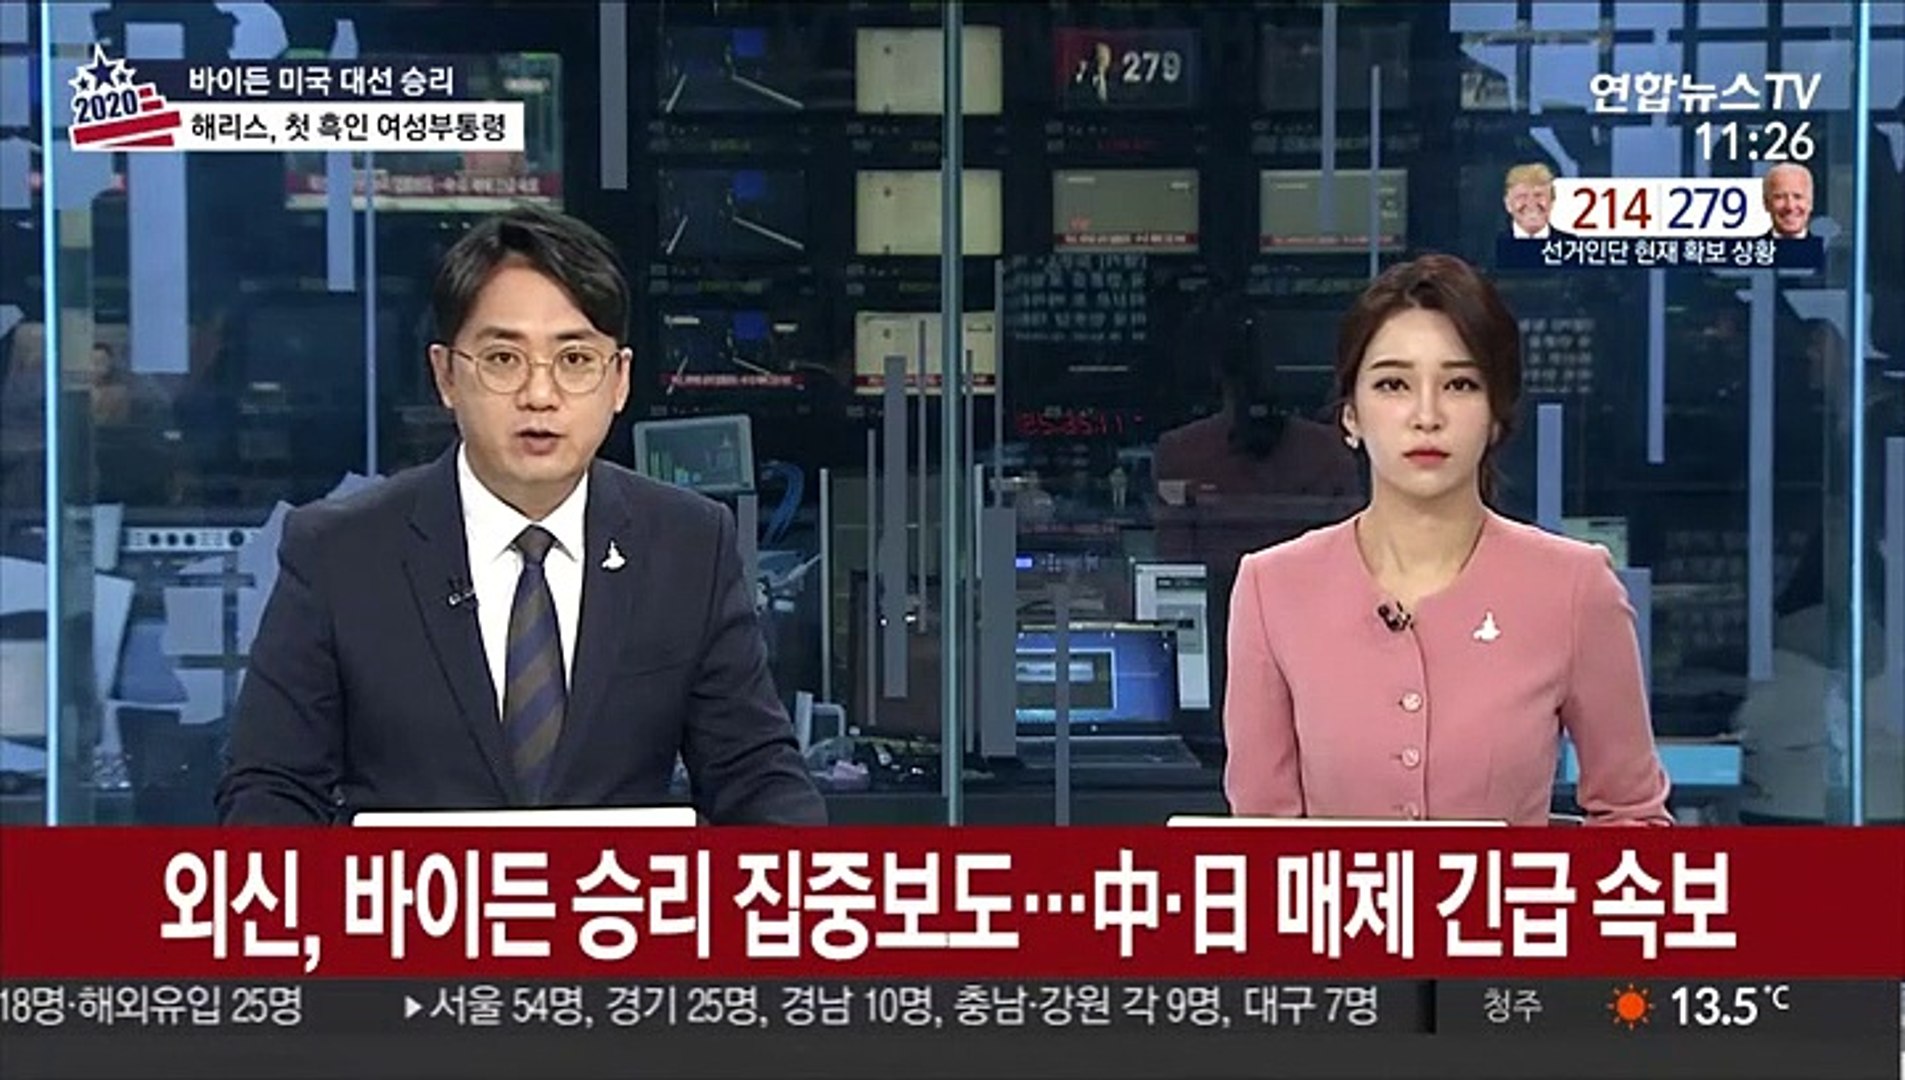 외신, 바이든 승리 집중보도…中·日 매체 긴급 속보 - 동영상 Dailymotion